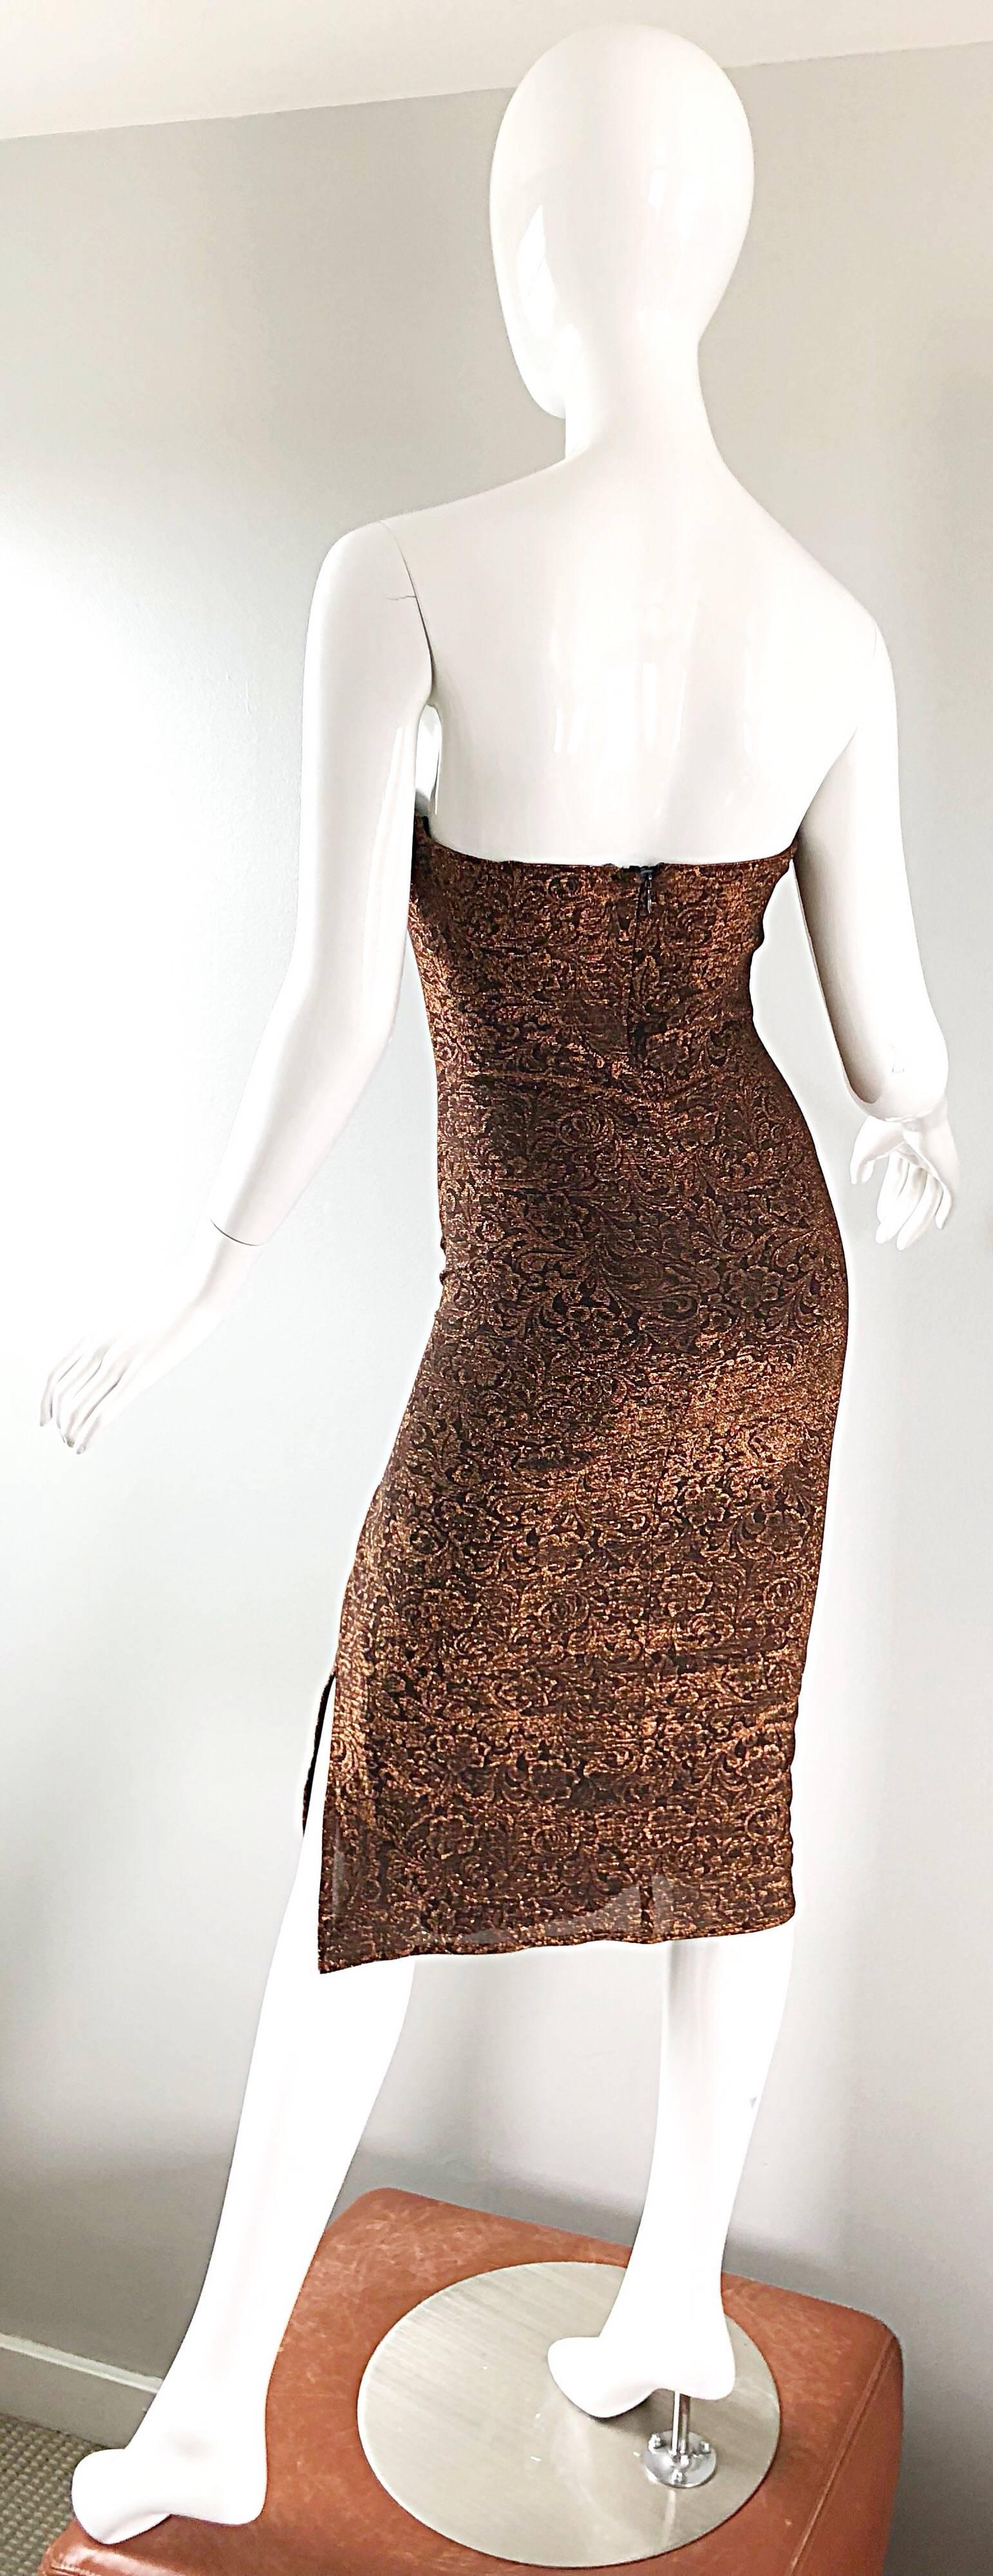 Women's 1990s Eletra Casadei Sexy Metallic Bronze / Gold Bodycon Convertible Strap Dress For Sale